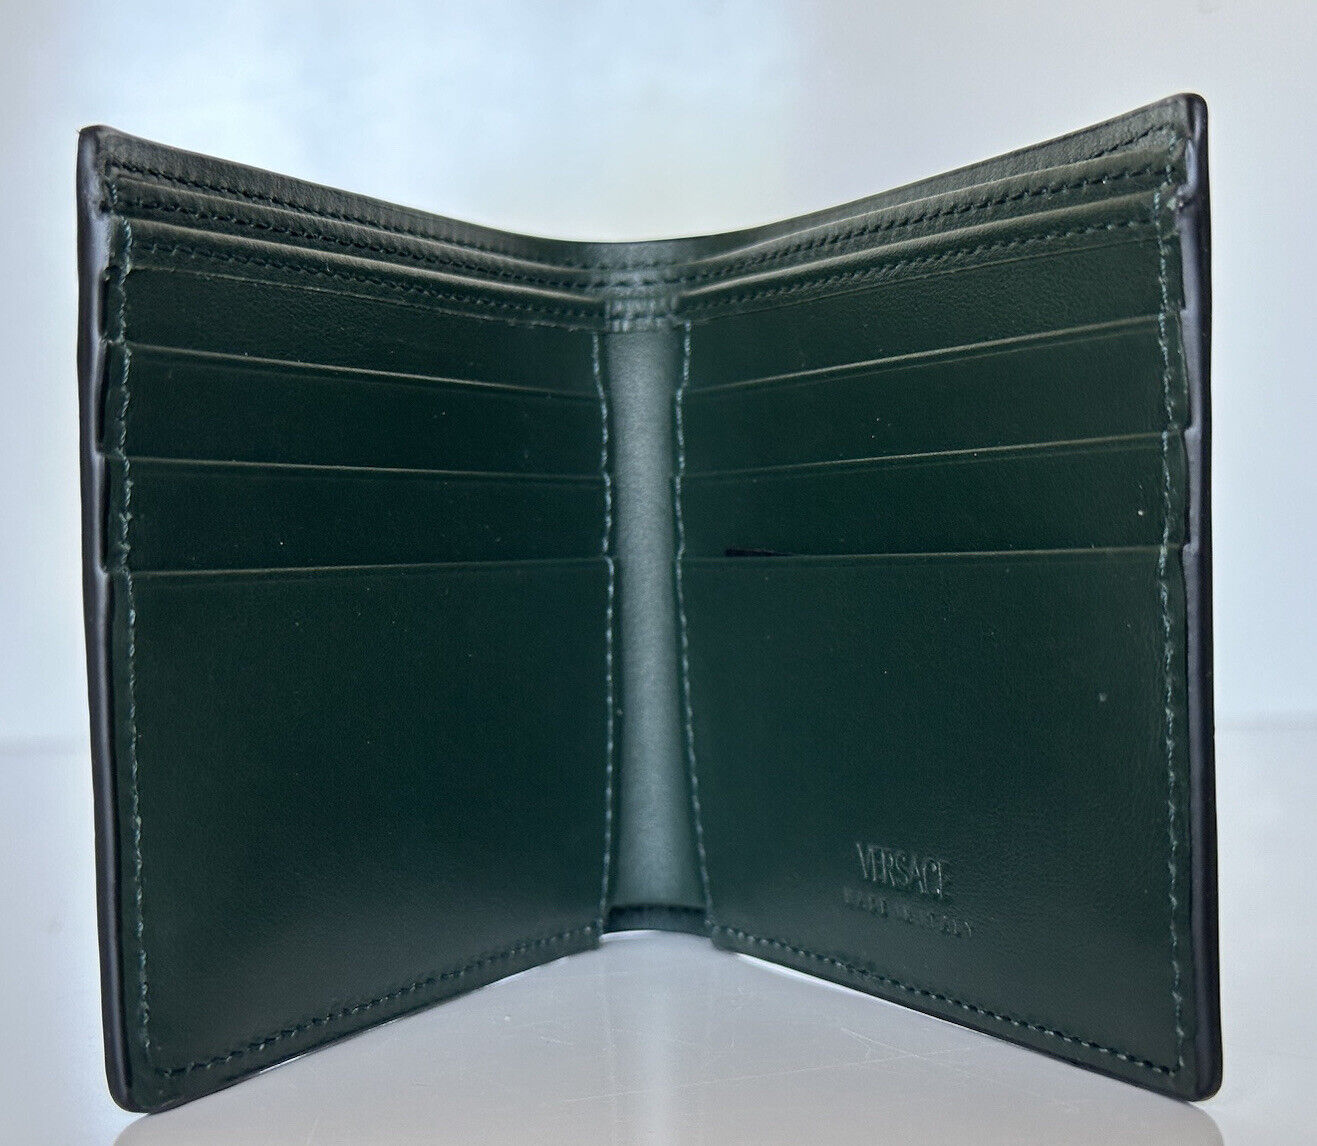 NWT 425 $ Versace Embedded Medusa Accents Geldbörse aus grünem Kalbsleder, hergestellt in Italien 